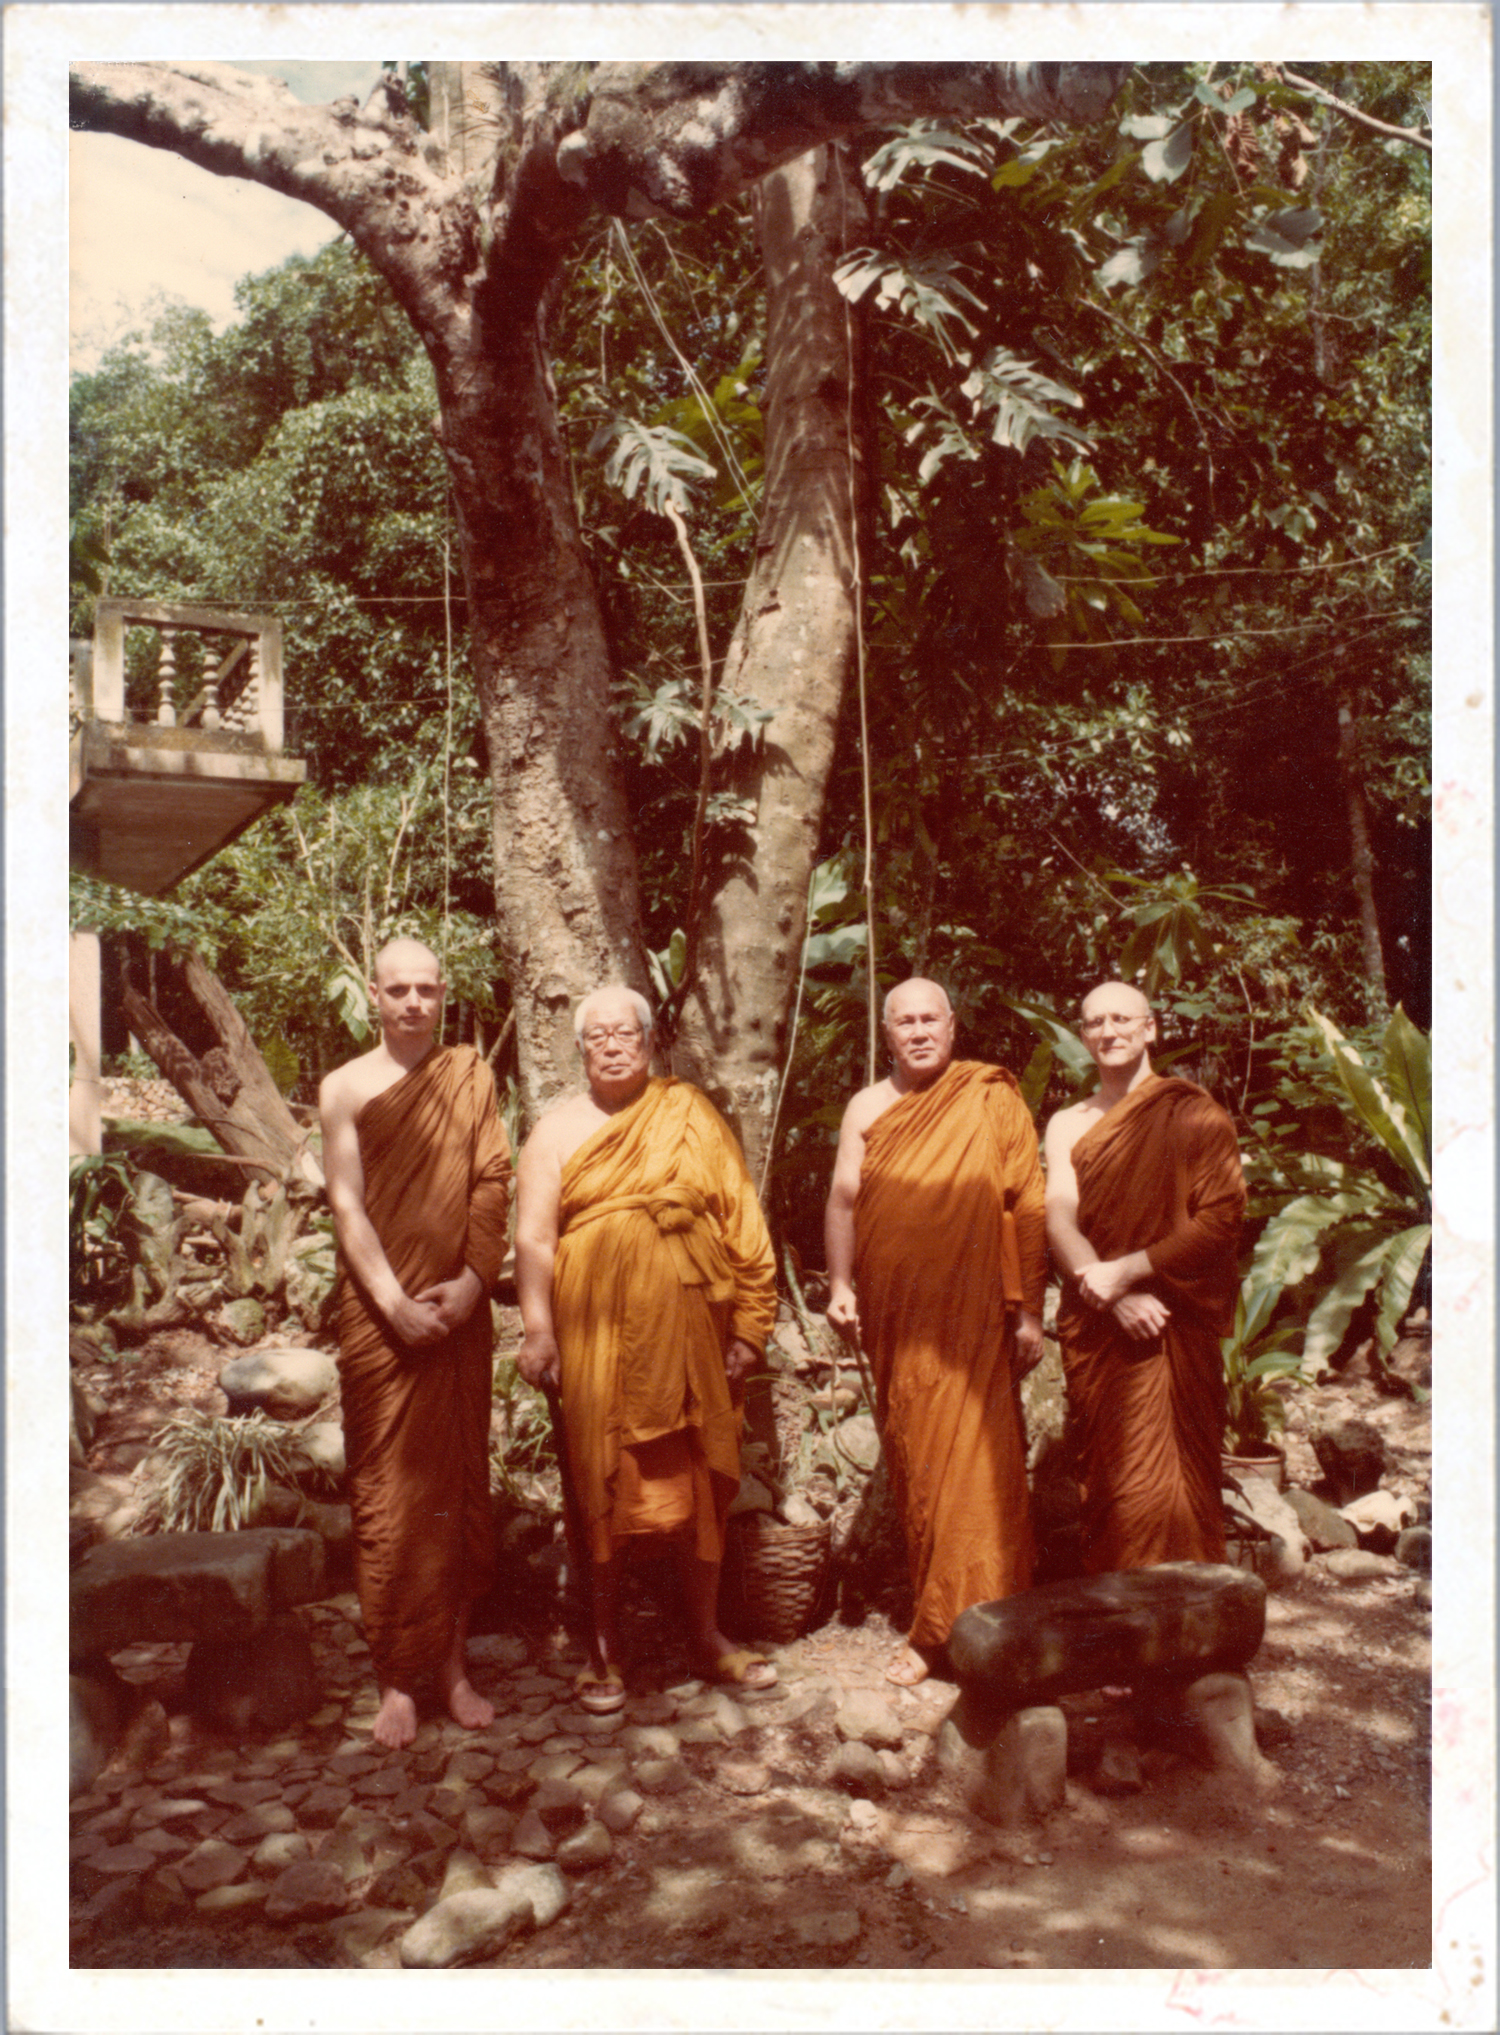 Buddhadasa indapanno archives c05276